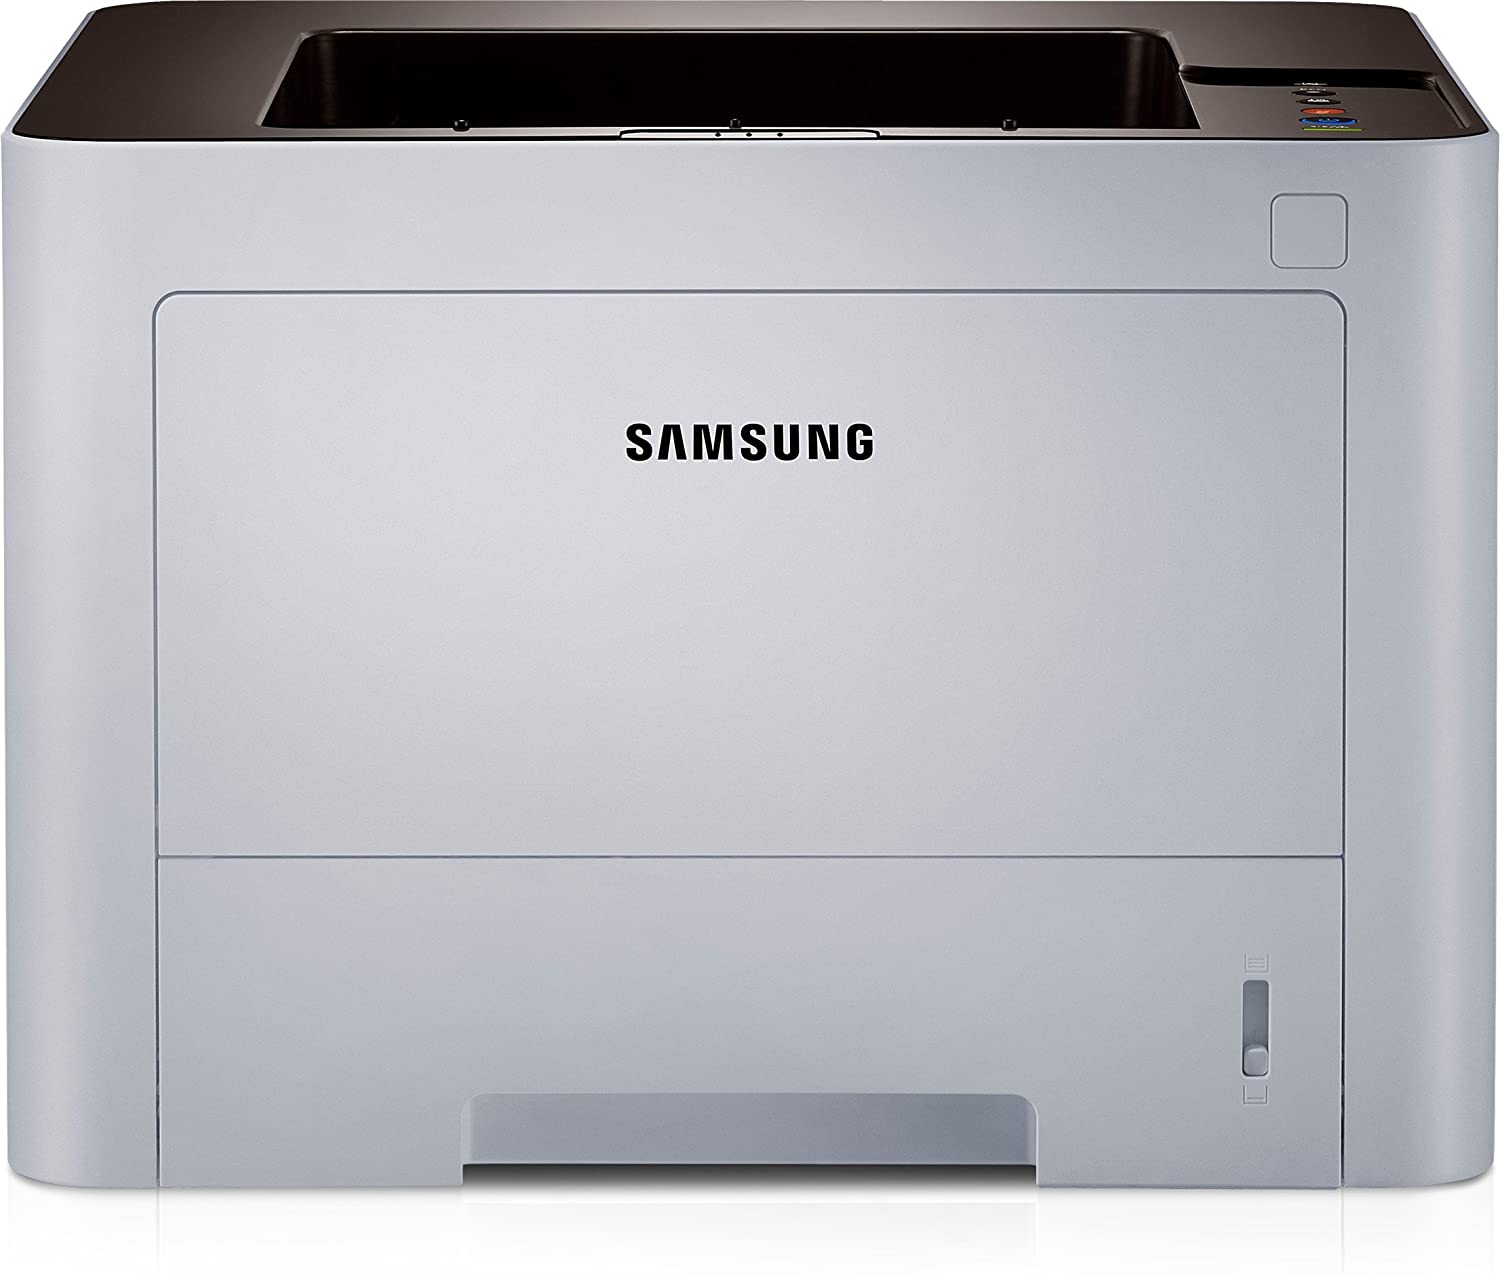 Samsung ProXpress SL-M3320ND Laser Printer with Auto-Duplex